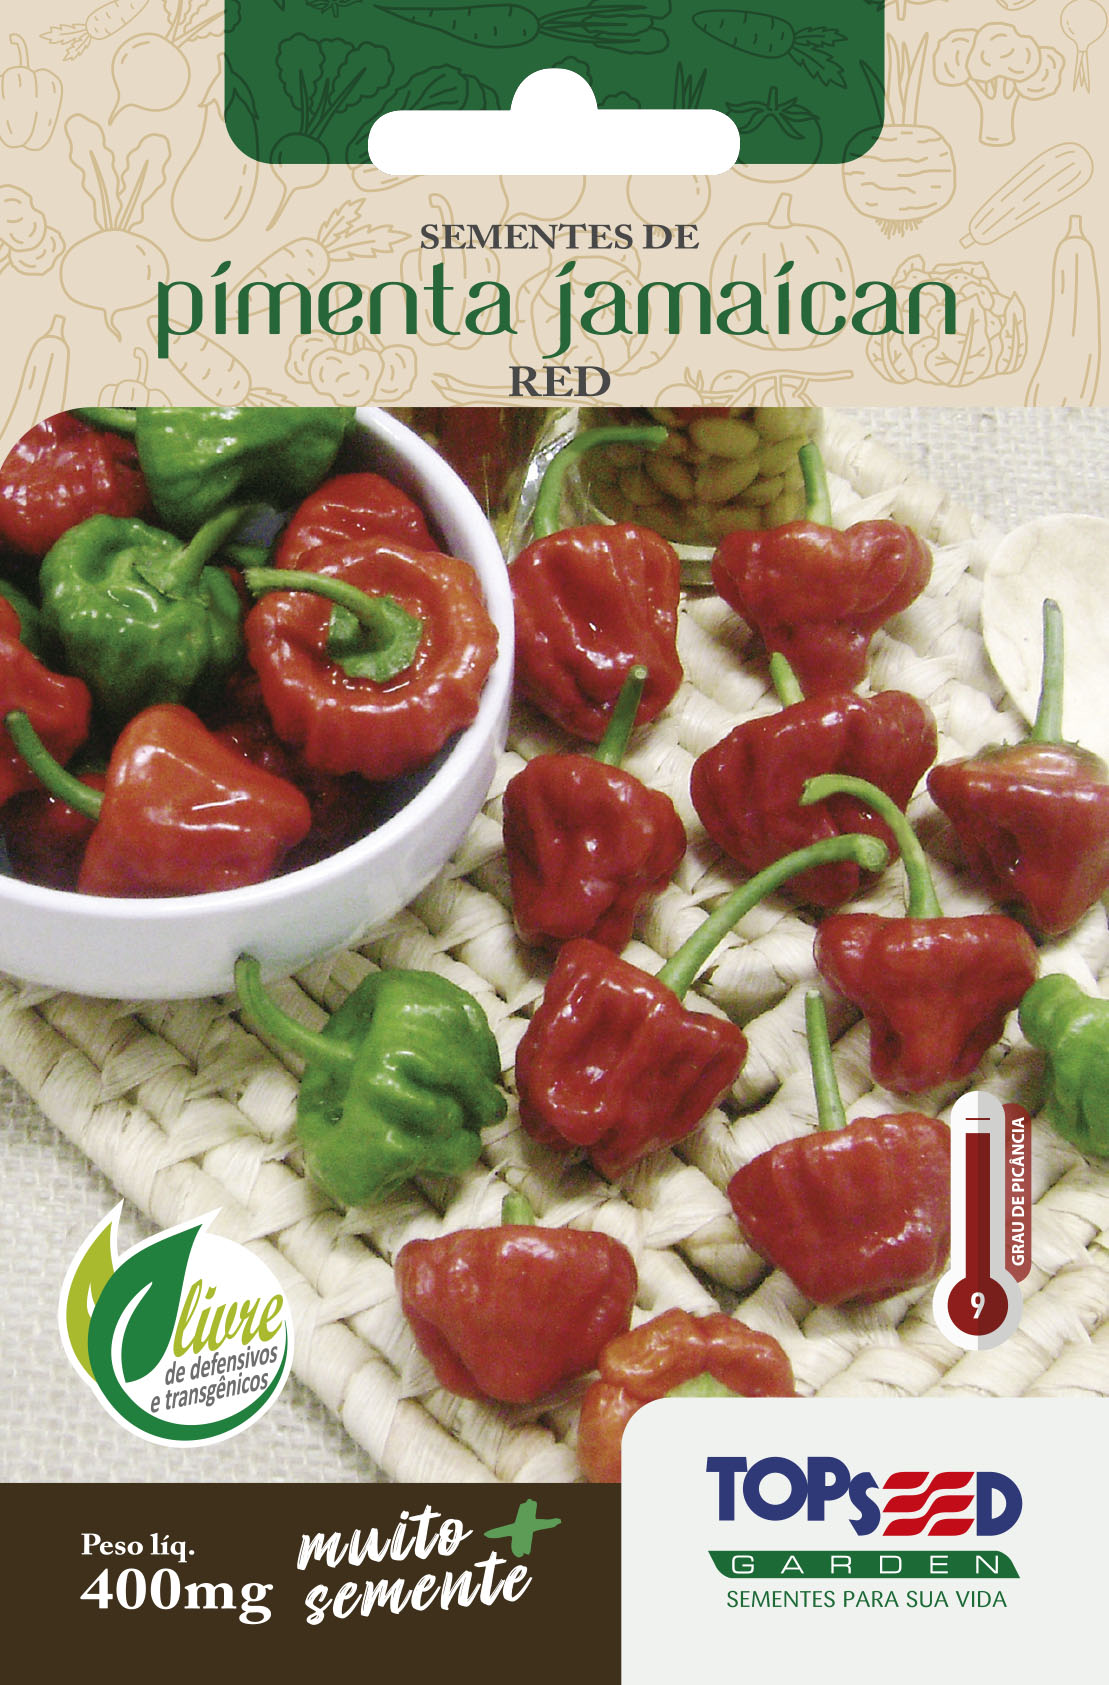 Pimenta Jamaican Red